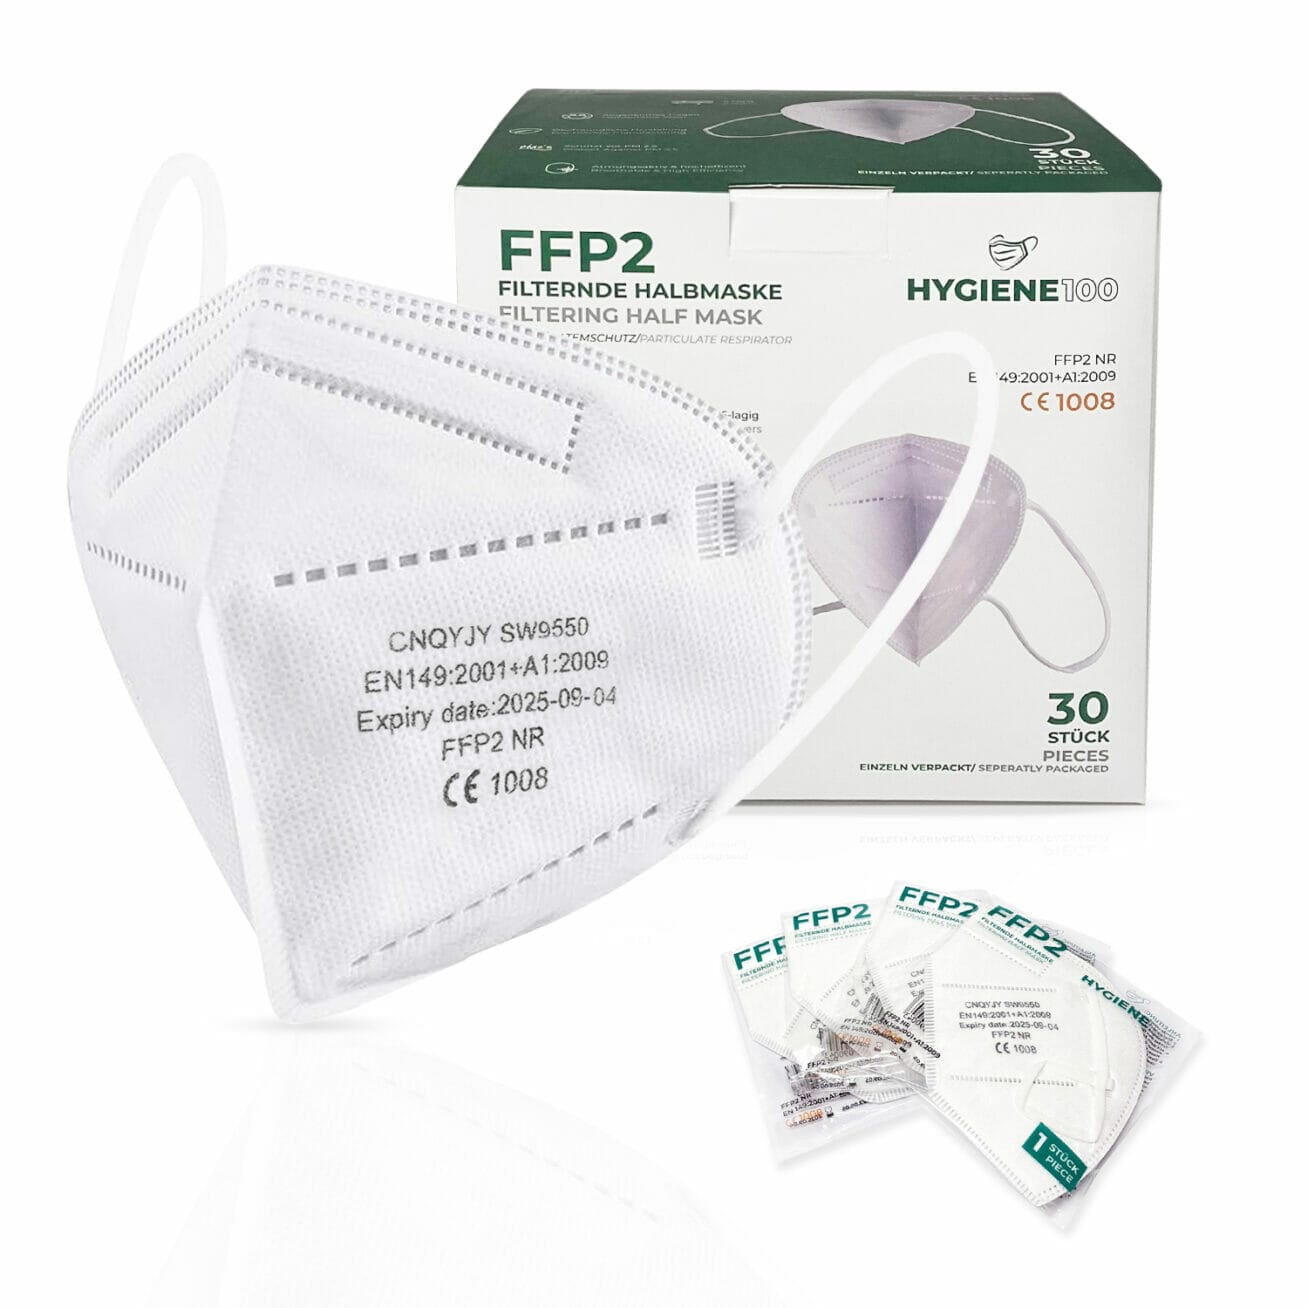 30 Stück FFP2 Schutzmasken, hocheffiziente Filter-Einwegmasken, CE1008 – Hygiene 100